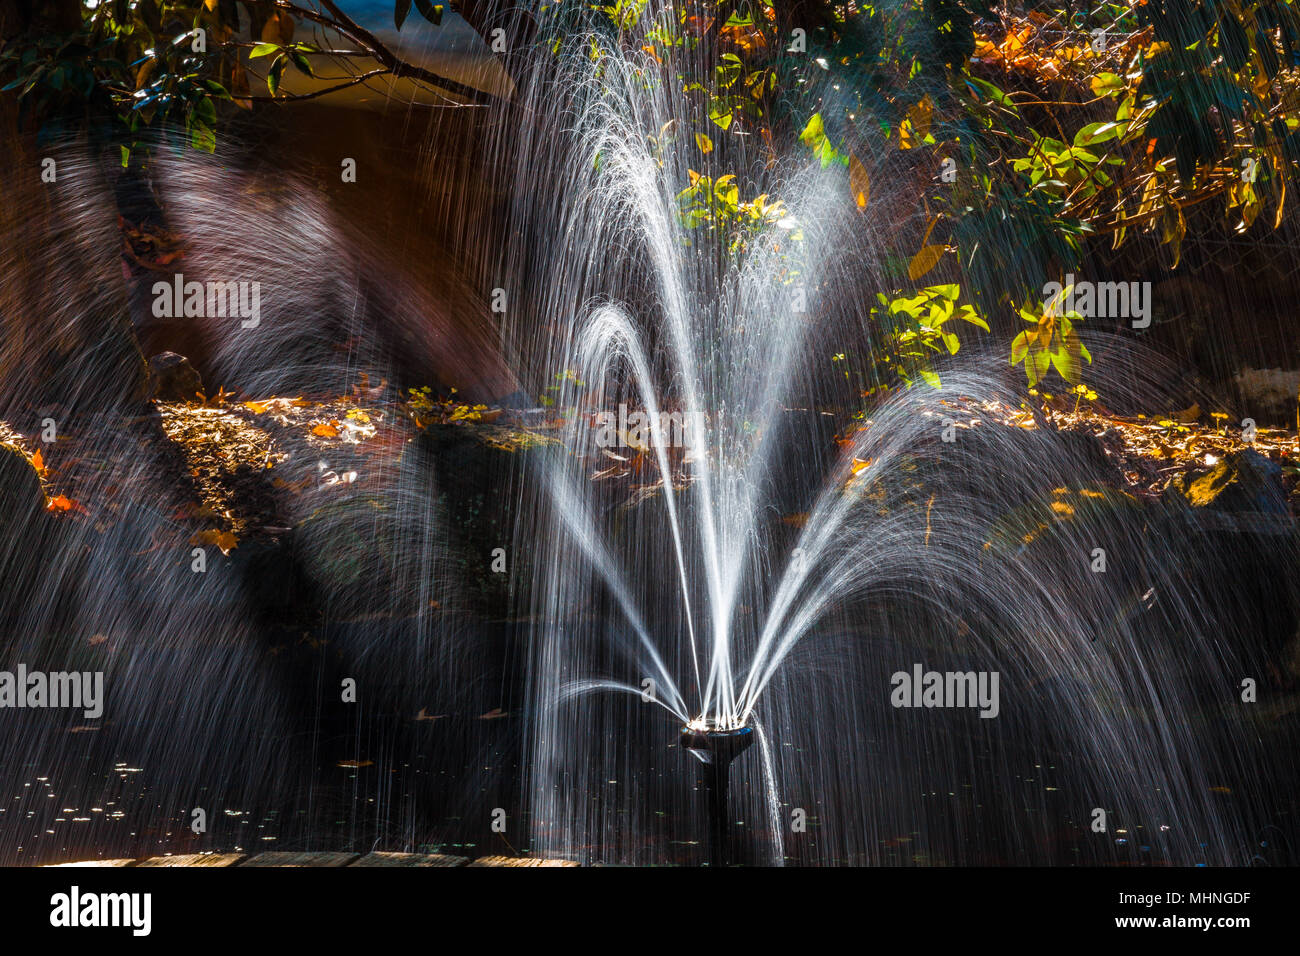 Belle fontaine à eau libre dans un jardin en automne Banque D'Images